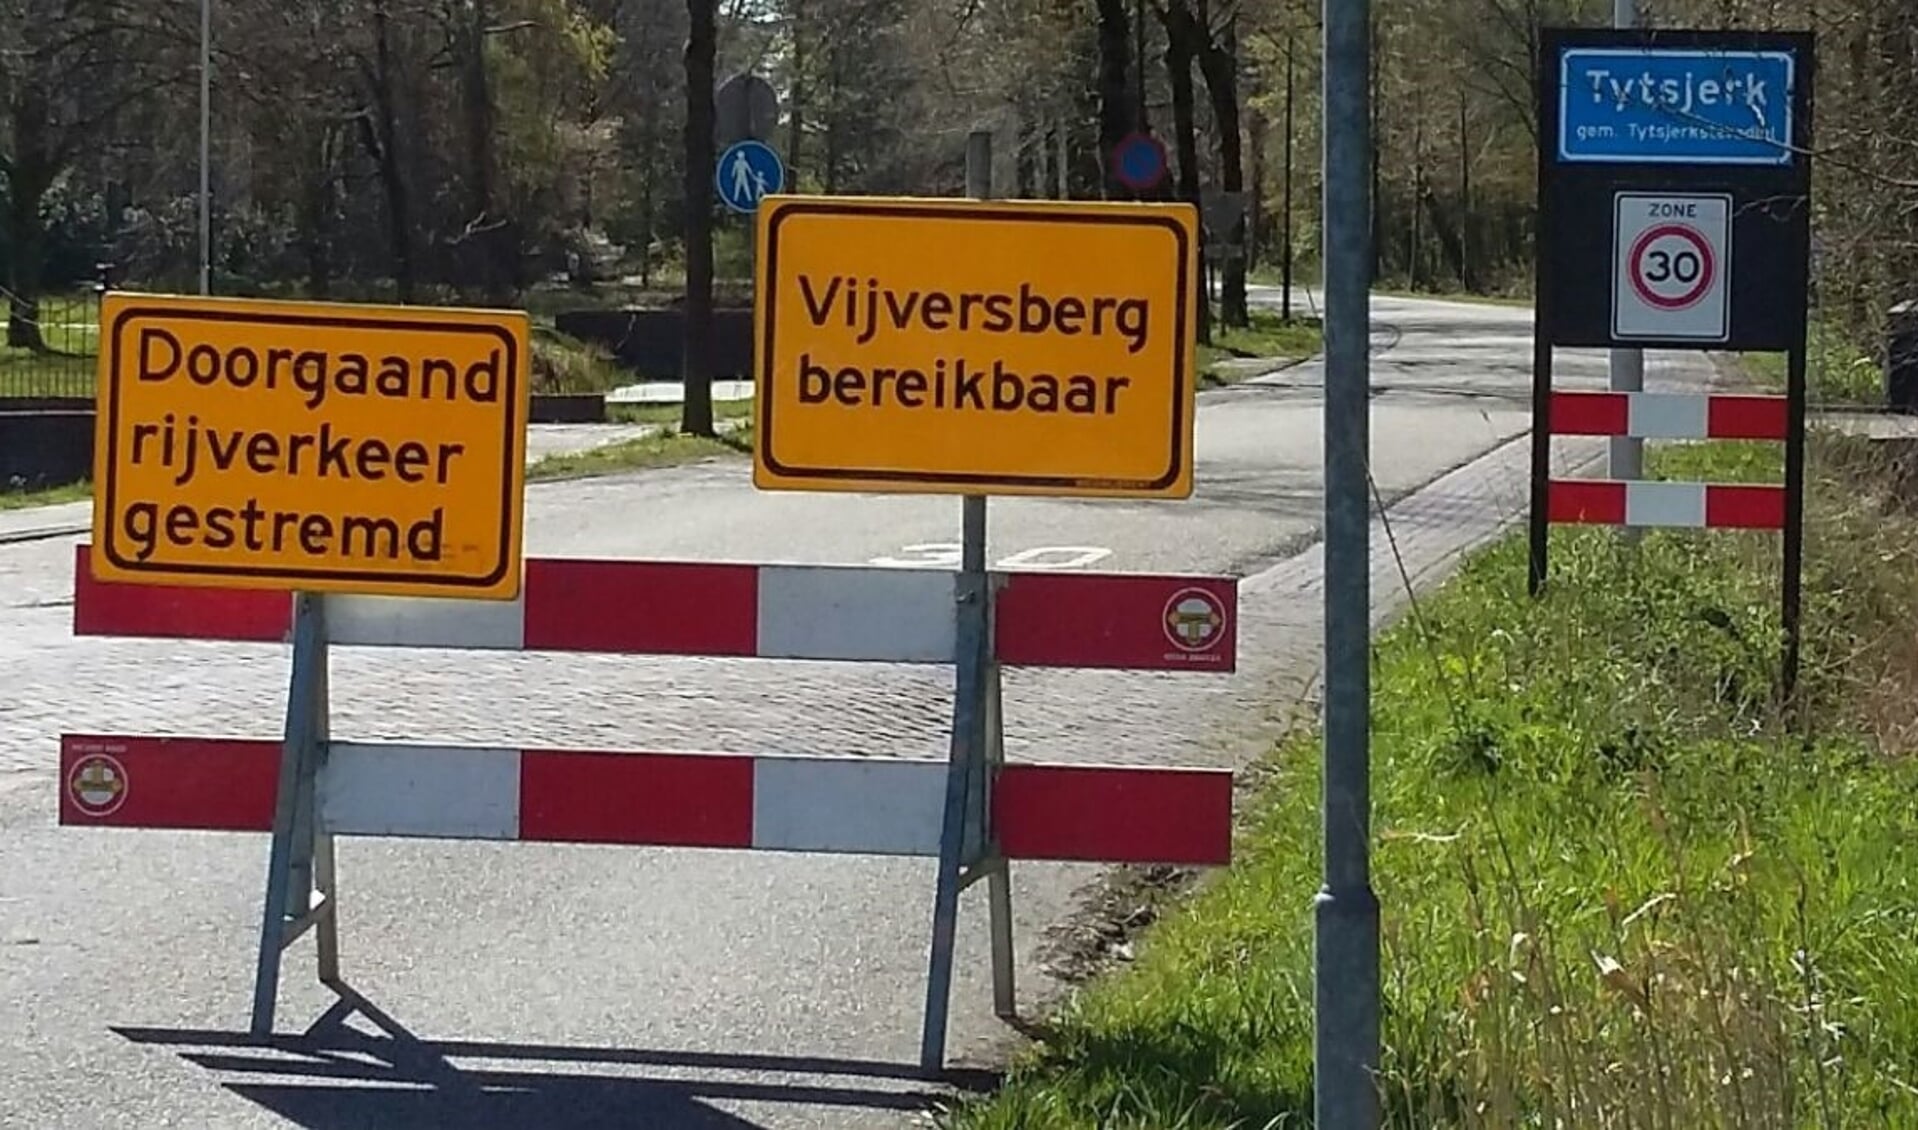 Wie Park Vijversburg bezoekt, moet vanaf 25 mei rekening houden met een wegomleiding.